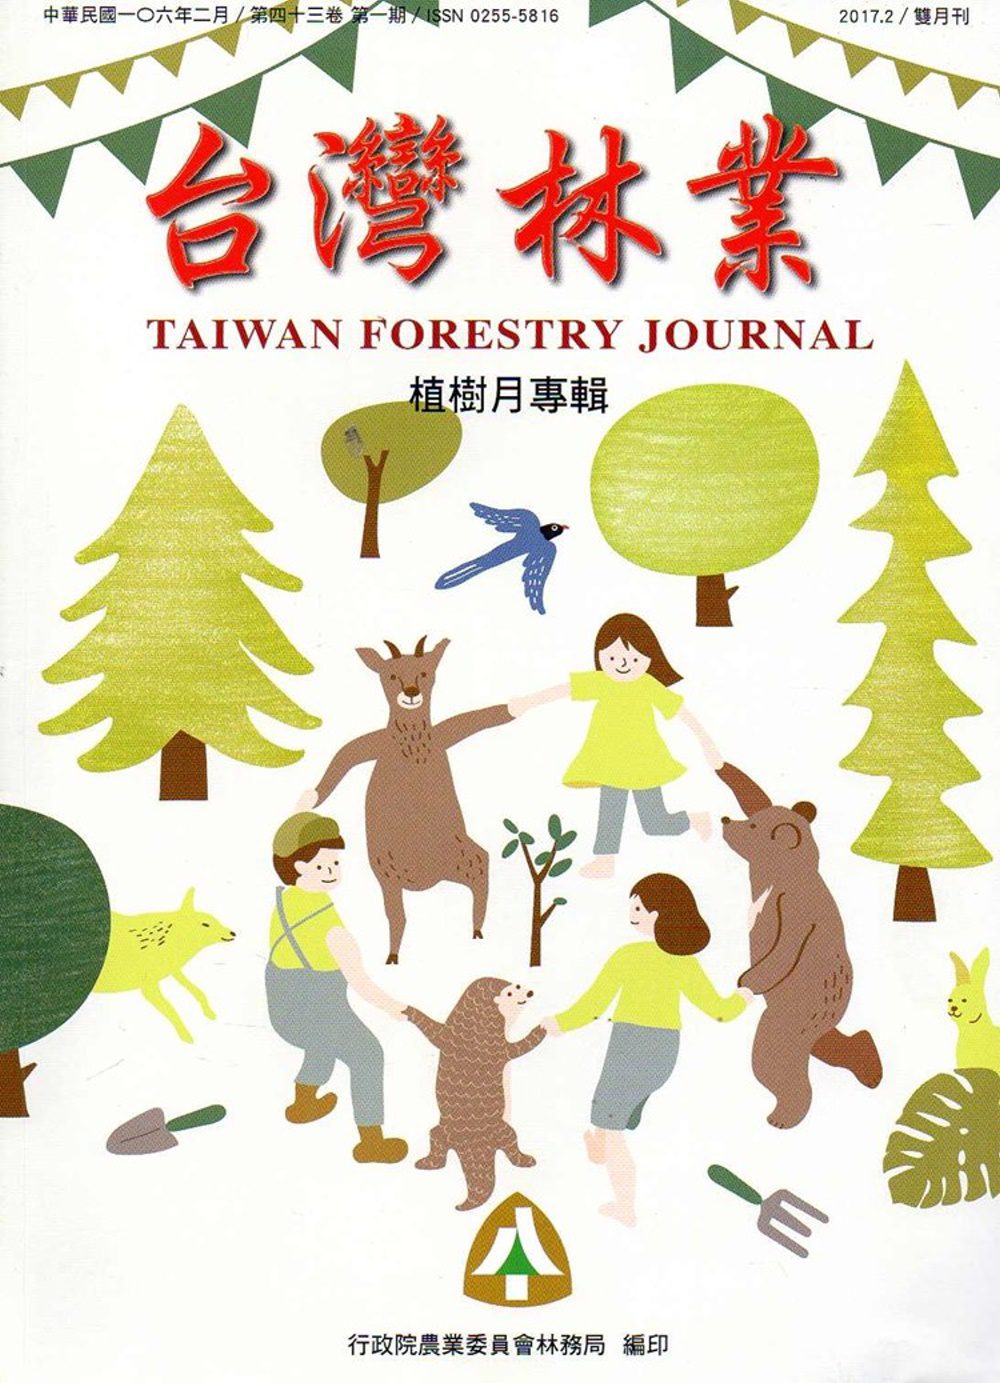 台灣林業43卷1期(2017.02)-植樹月專輯